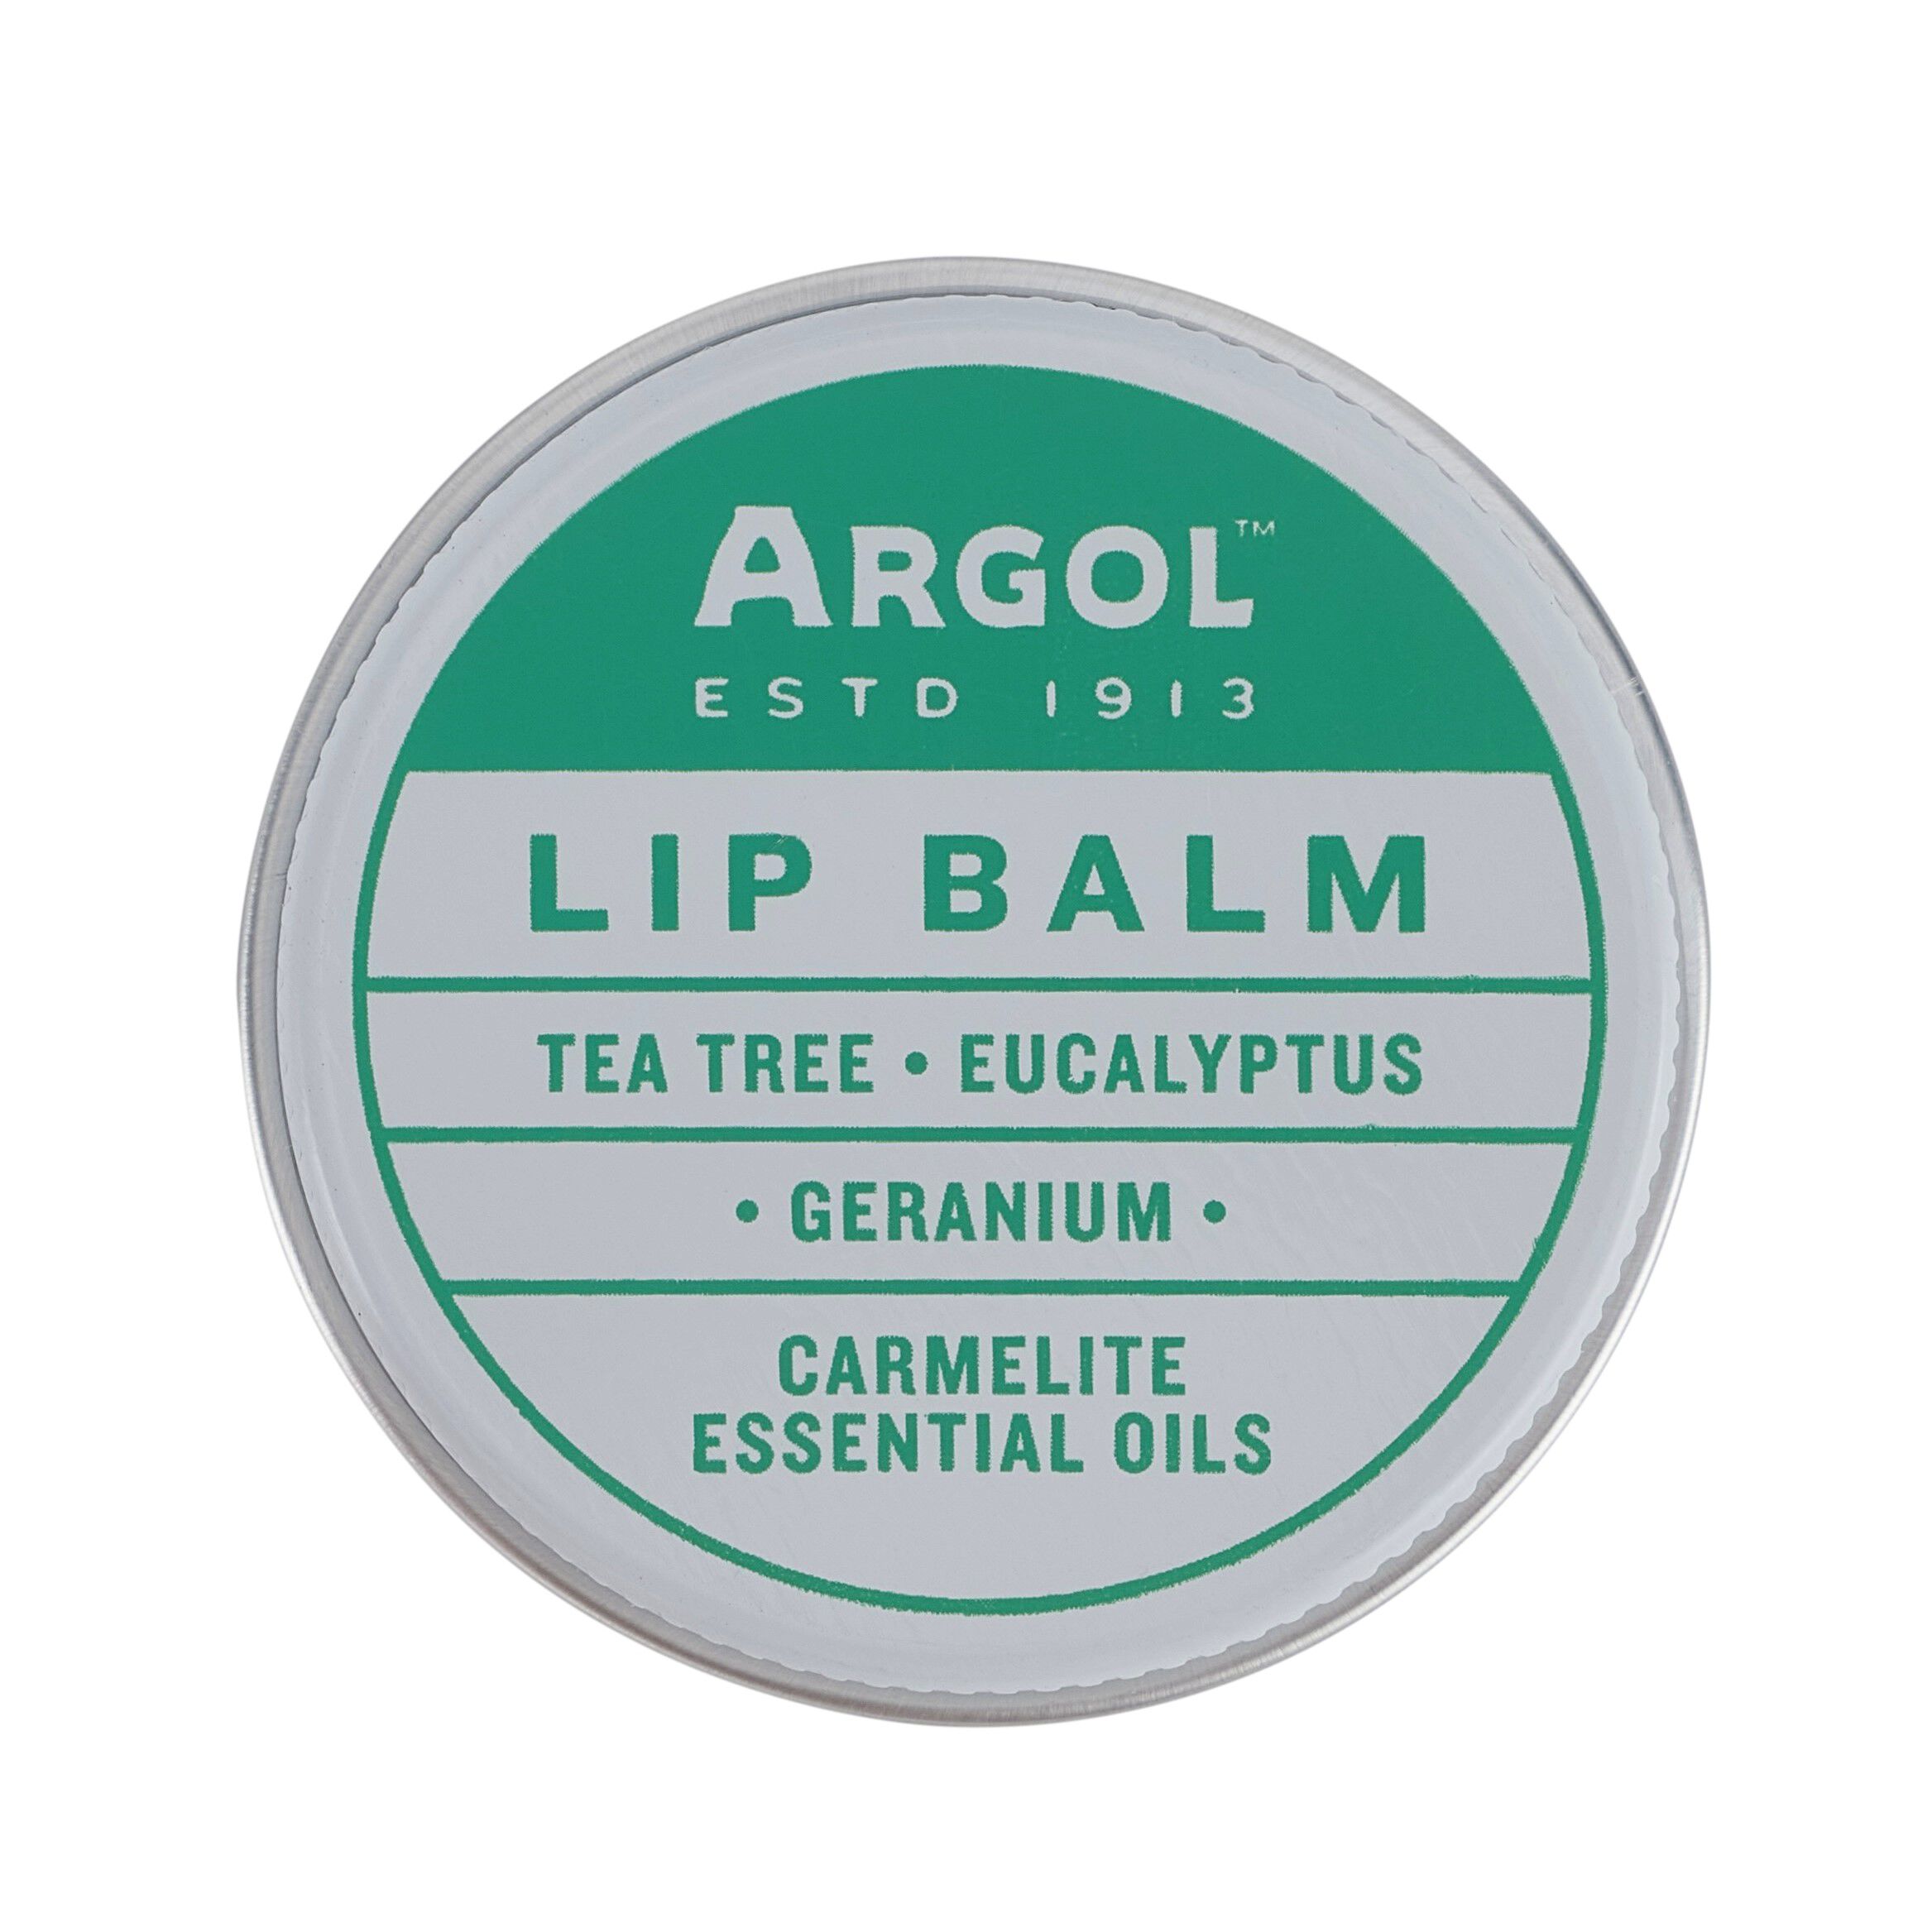 Бальзам для губ с маслом чайного дерева Argol Lip Balm, 10 гр earth s care бальзам с маслом чайного дерева 3 4 г 0 12 унции